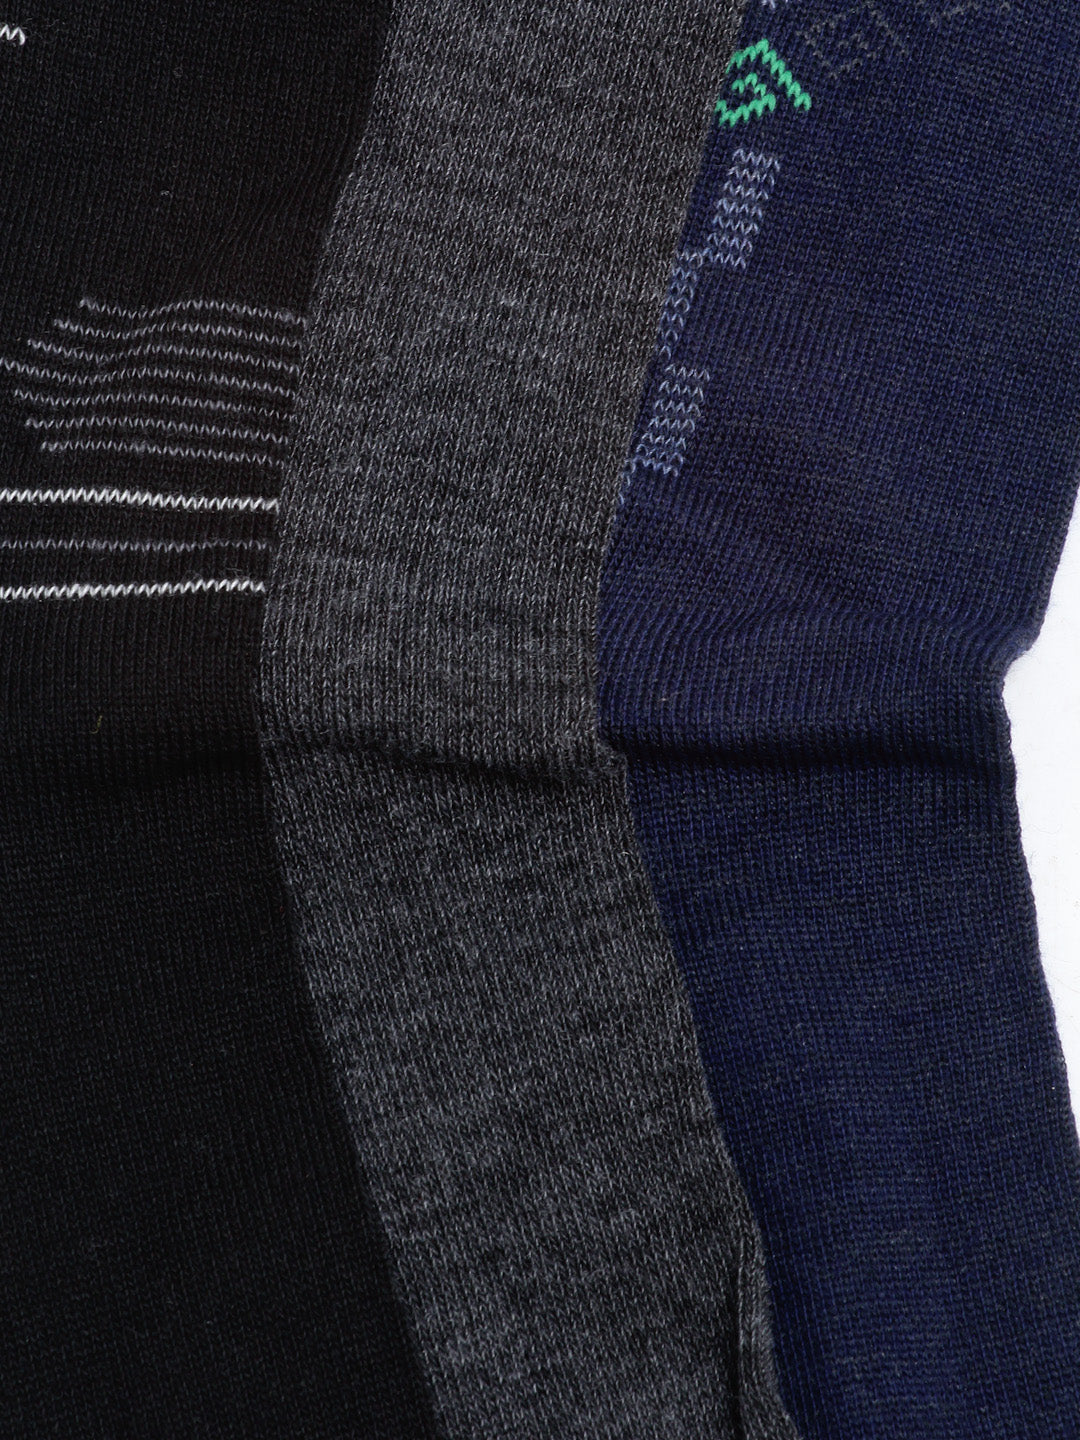 Alvaro Castagnino Men Pack of 3 Assorted Above Ankle-Length Socks